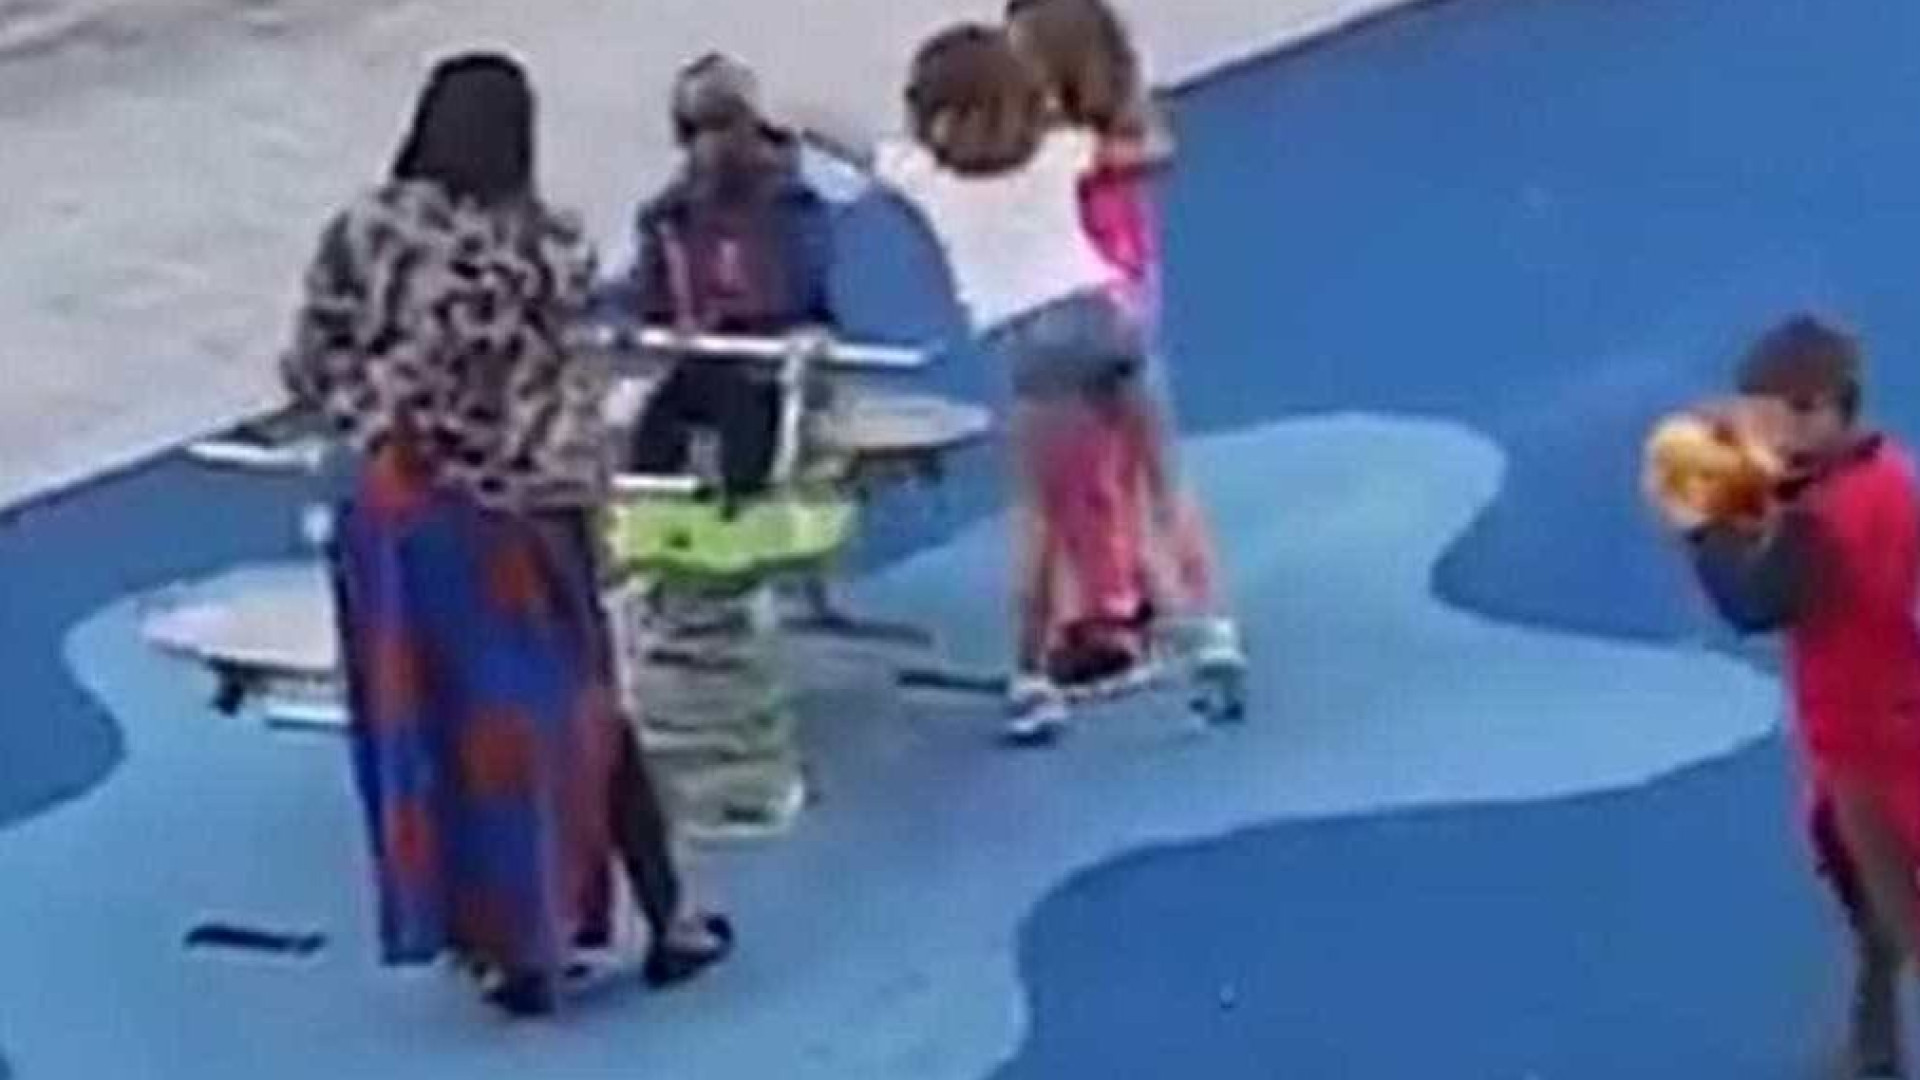 Racismo: crianças afastam menino negro em parque infantil na Espanha